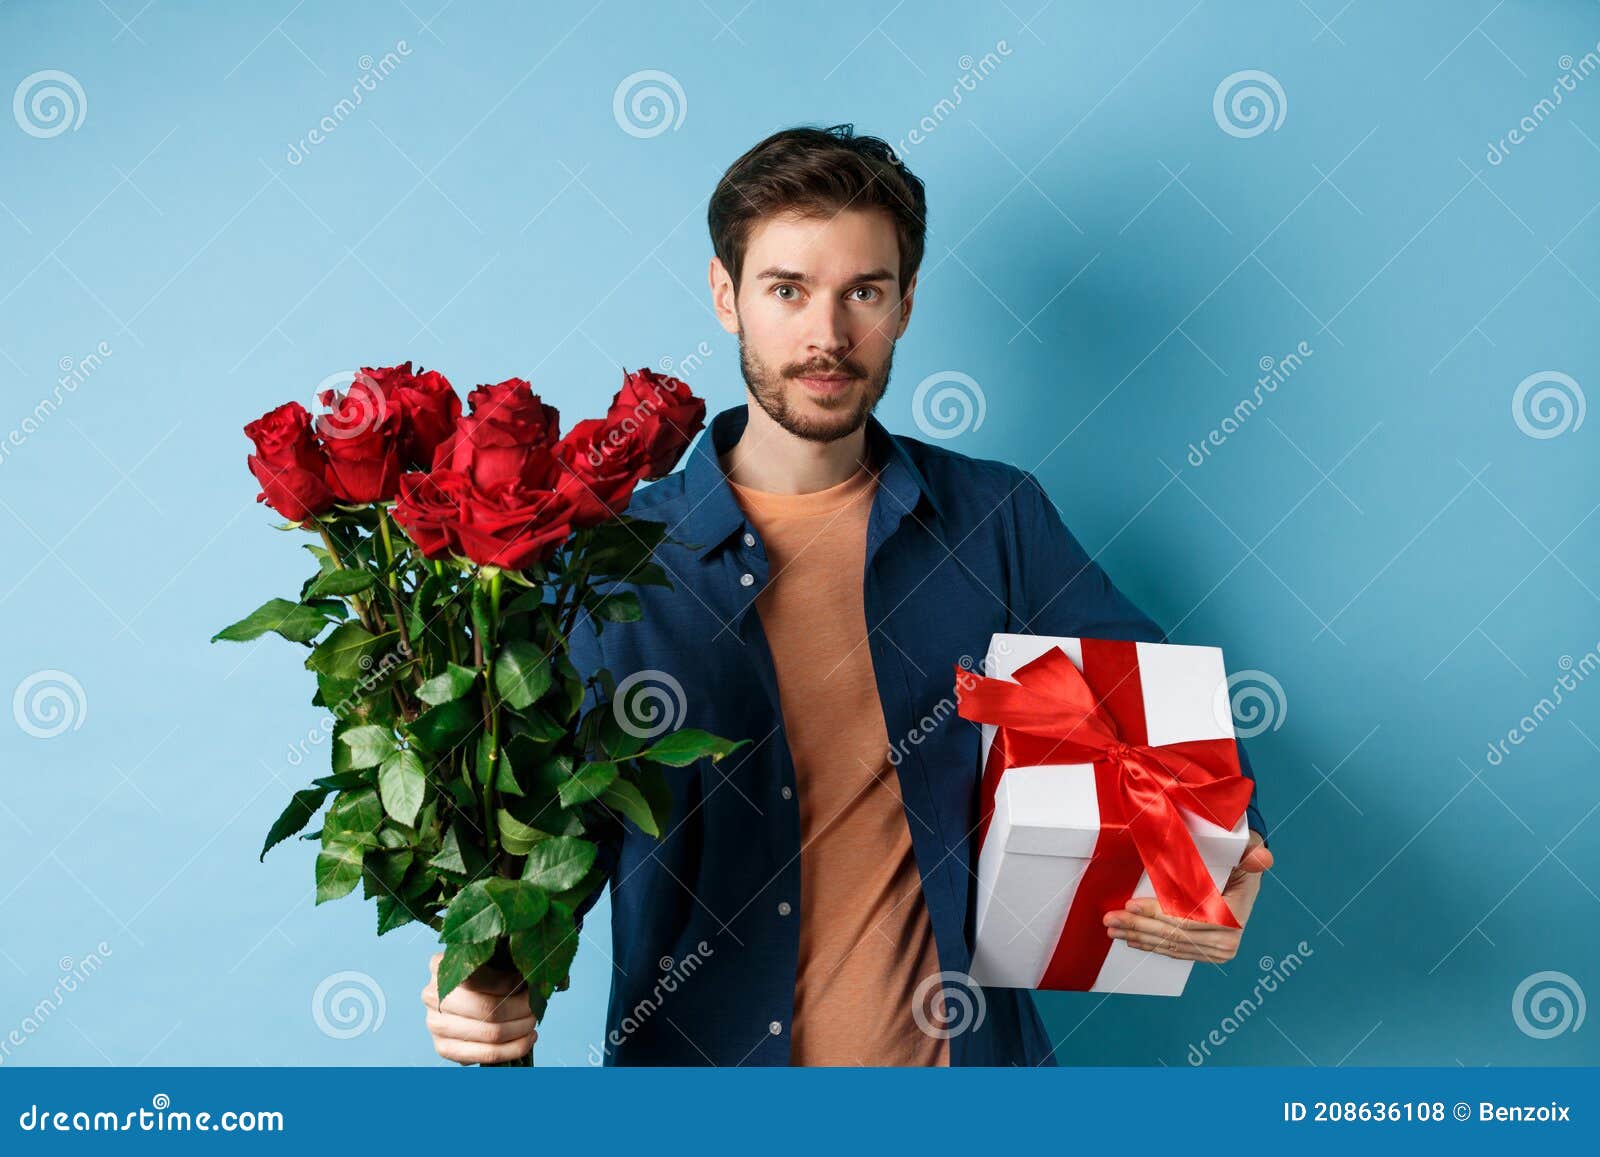 https://thumbs.dreamstime.com/z/d%C3%ADa-de-romance-y-san-valent%C3%ADn-hombre-presentando-ramo-rosas-rojas-amante-novio-trae-flores-regalo-para-el-rom%C3%A1ntico-en-una-208636108.jpg